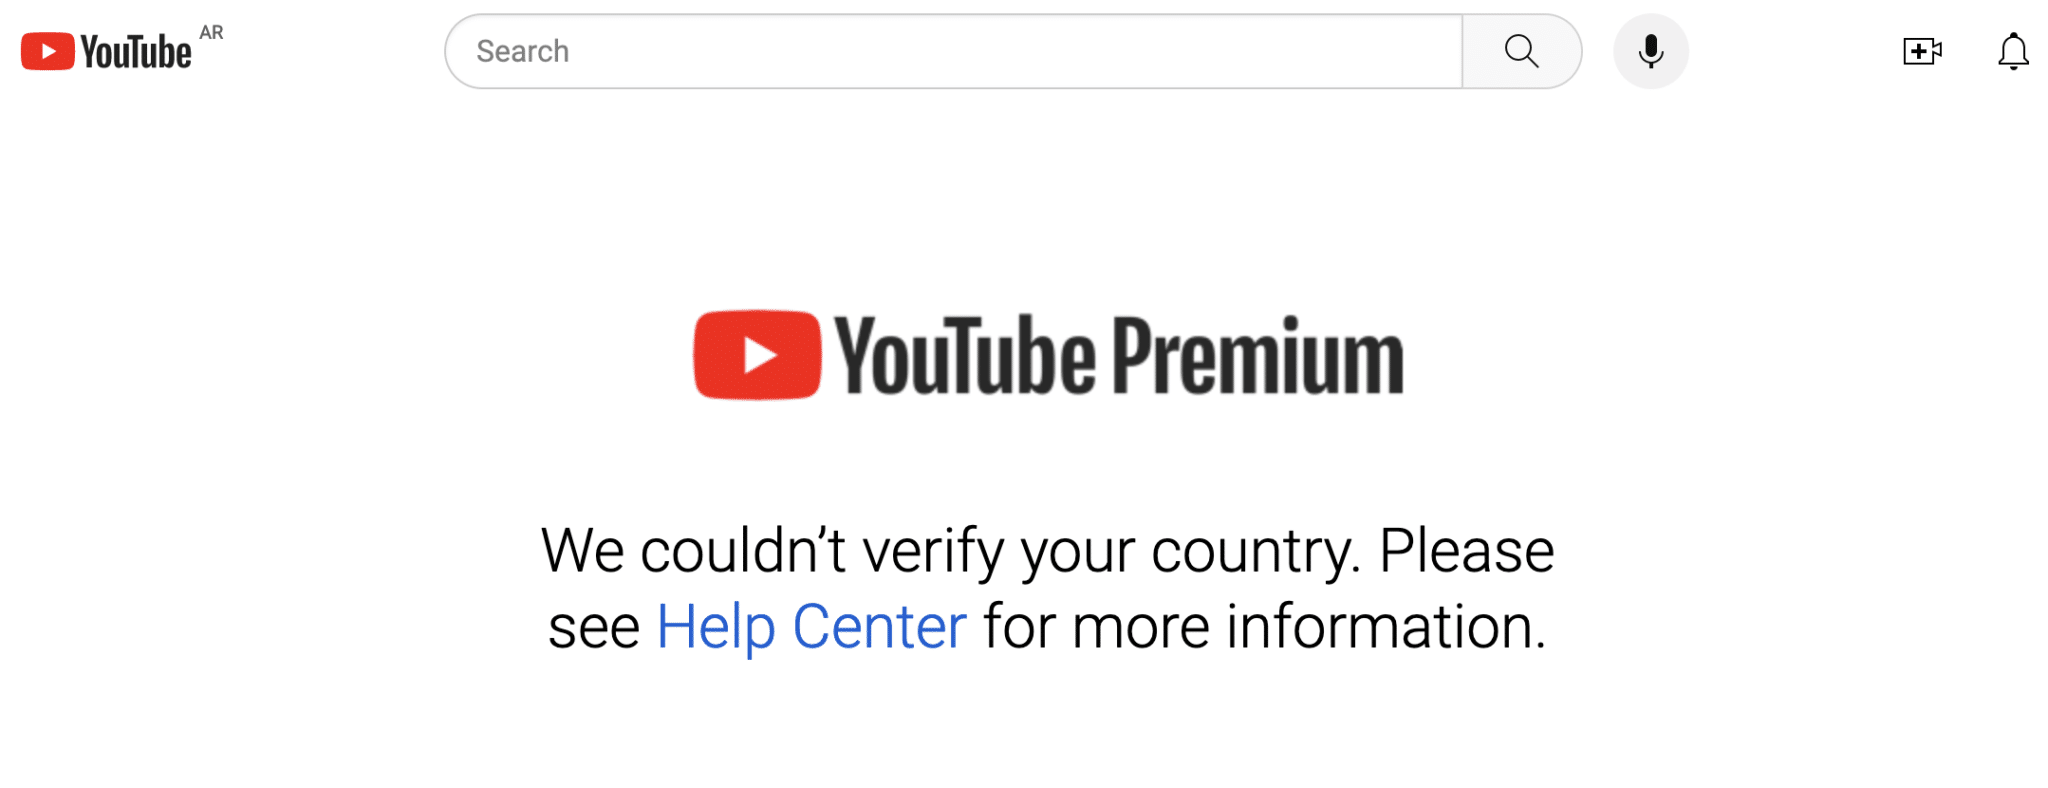 YouTube Premium erreur VPN